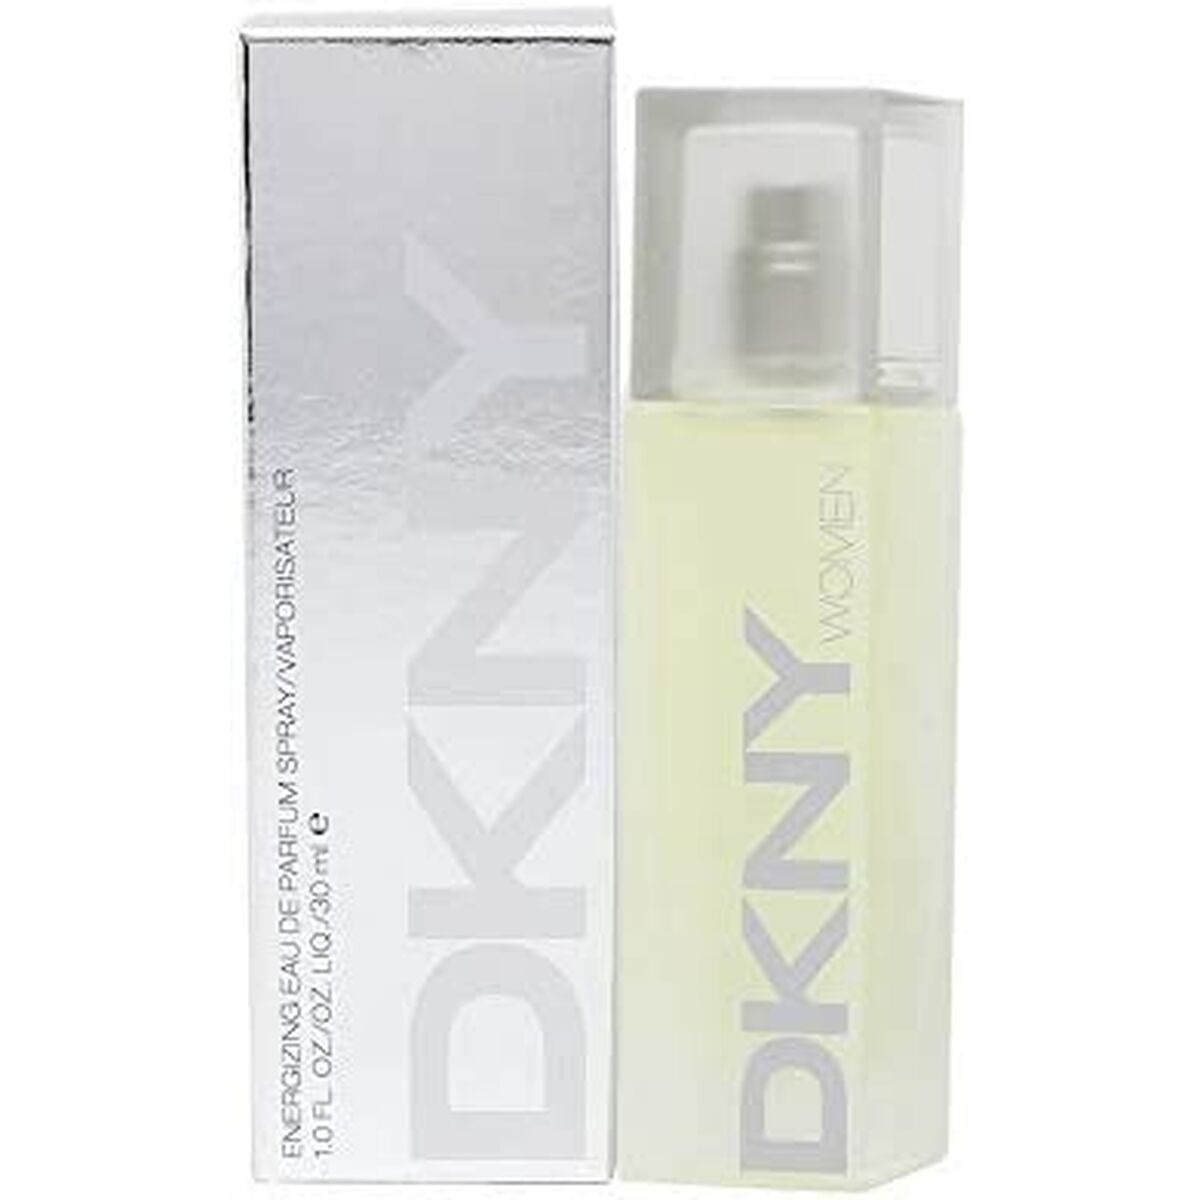 Perfume feminino dkny dnkdknf0103002 edp edp 30 ml